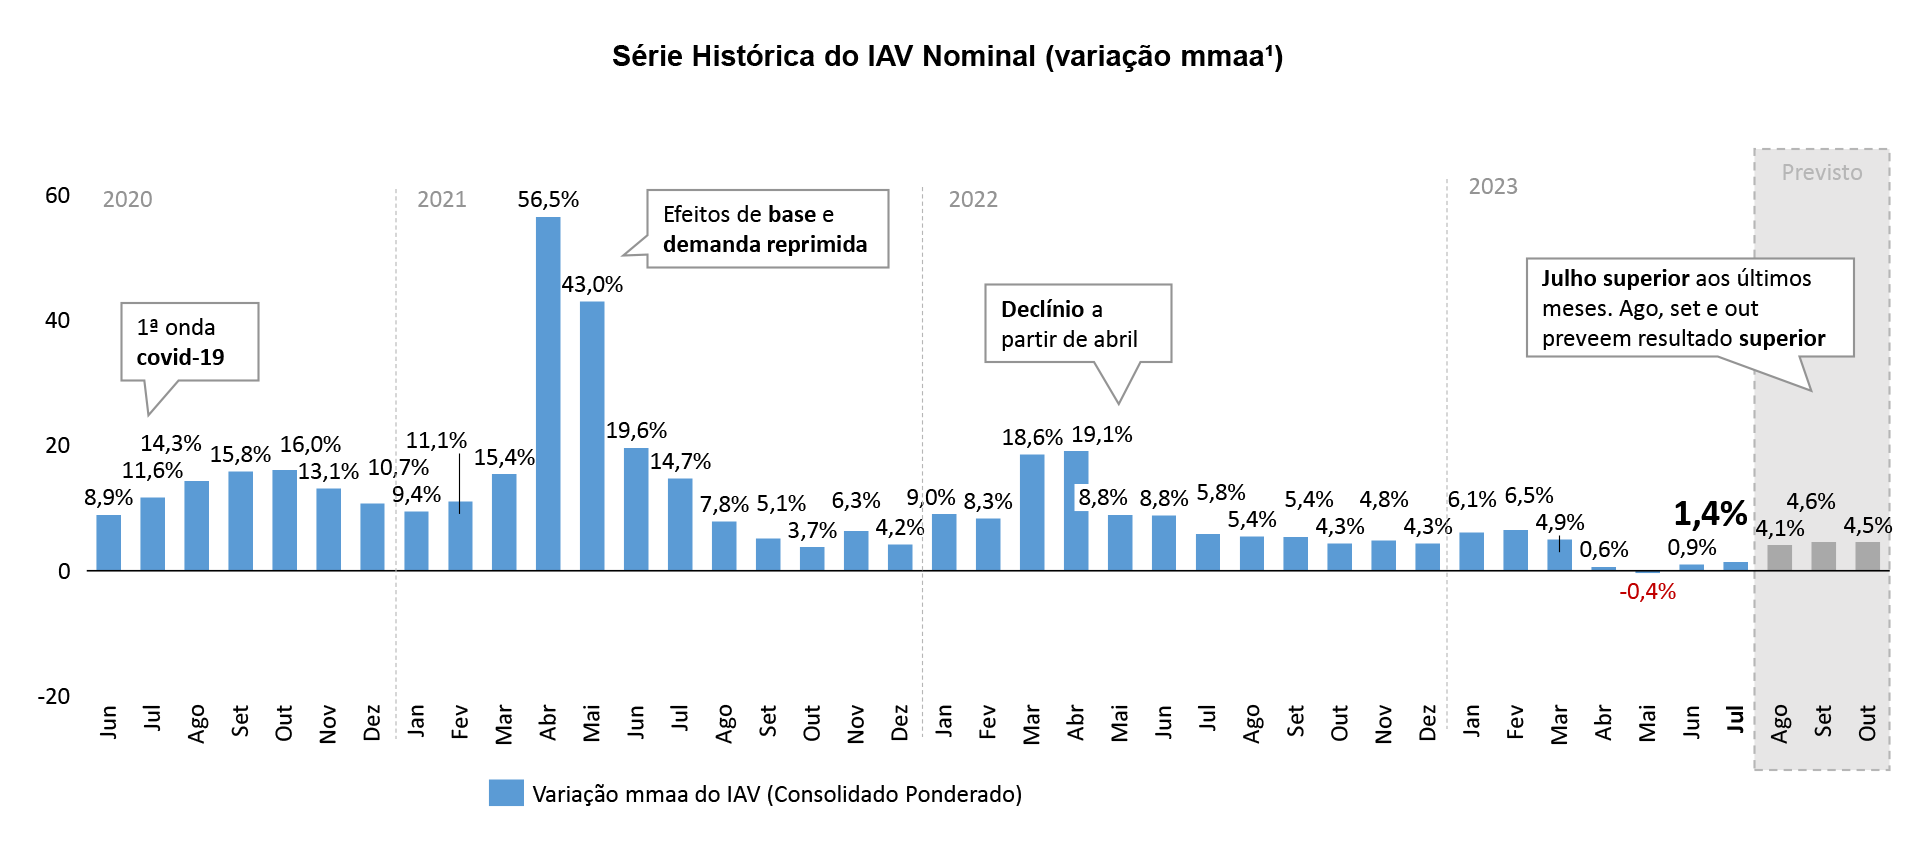 O resultado de julho apresentou retração de 2,6%. Já o IAV consolidado, sem o ajuste pelo IPCA, apresenta previsão de crescimento nominal de 4,1% em agosto, 4,6% em setembro e 4,5% em outubro.